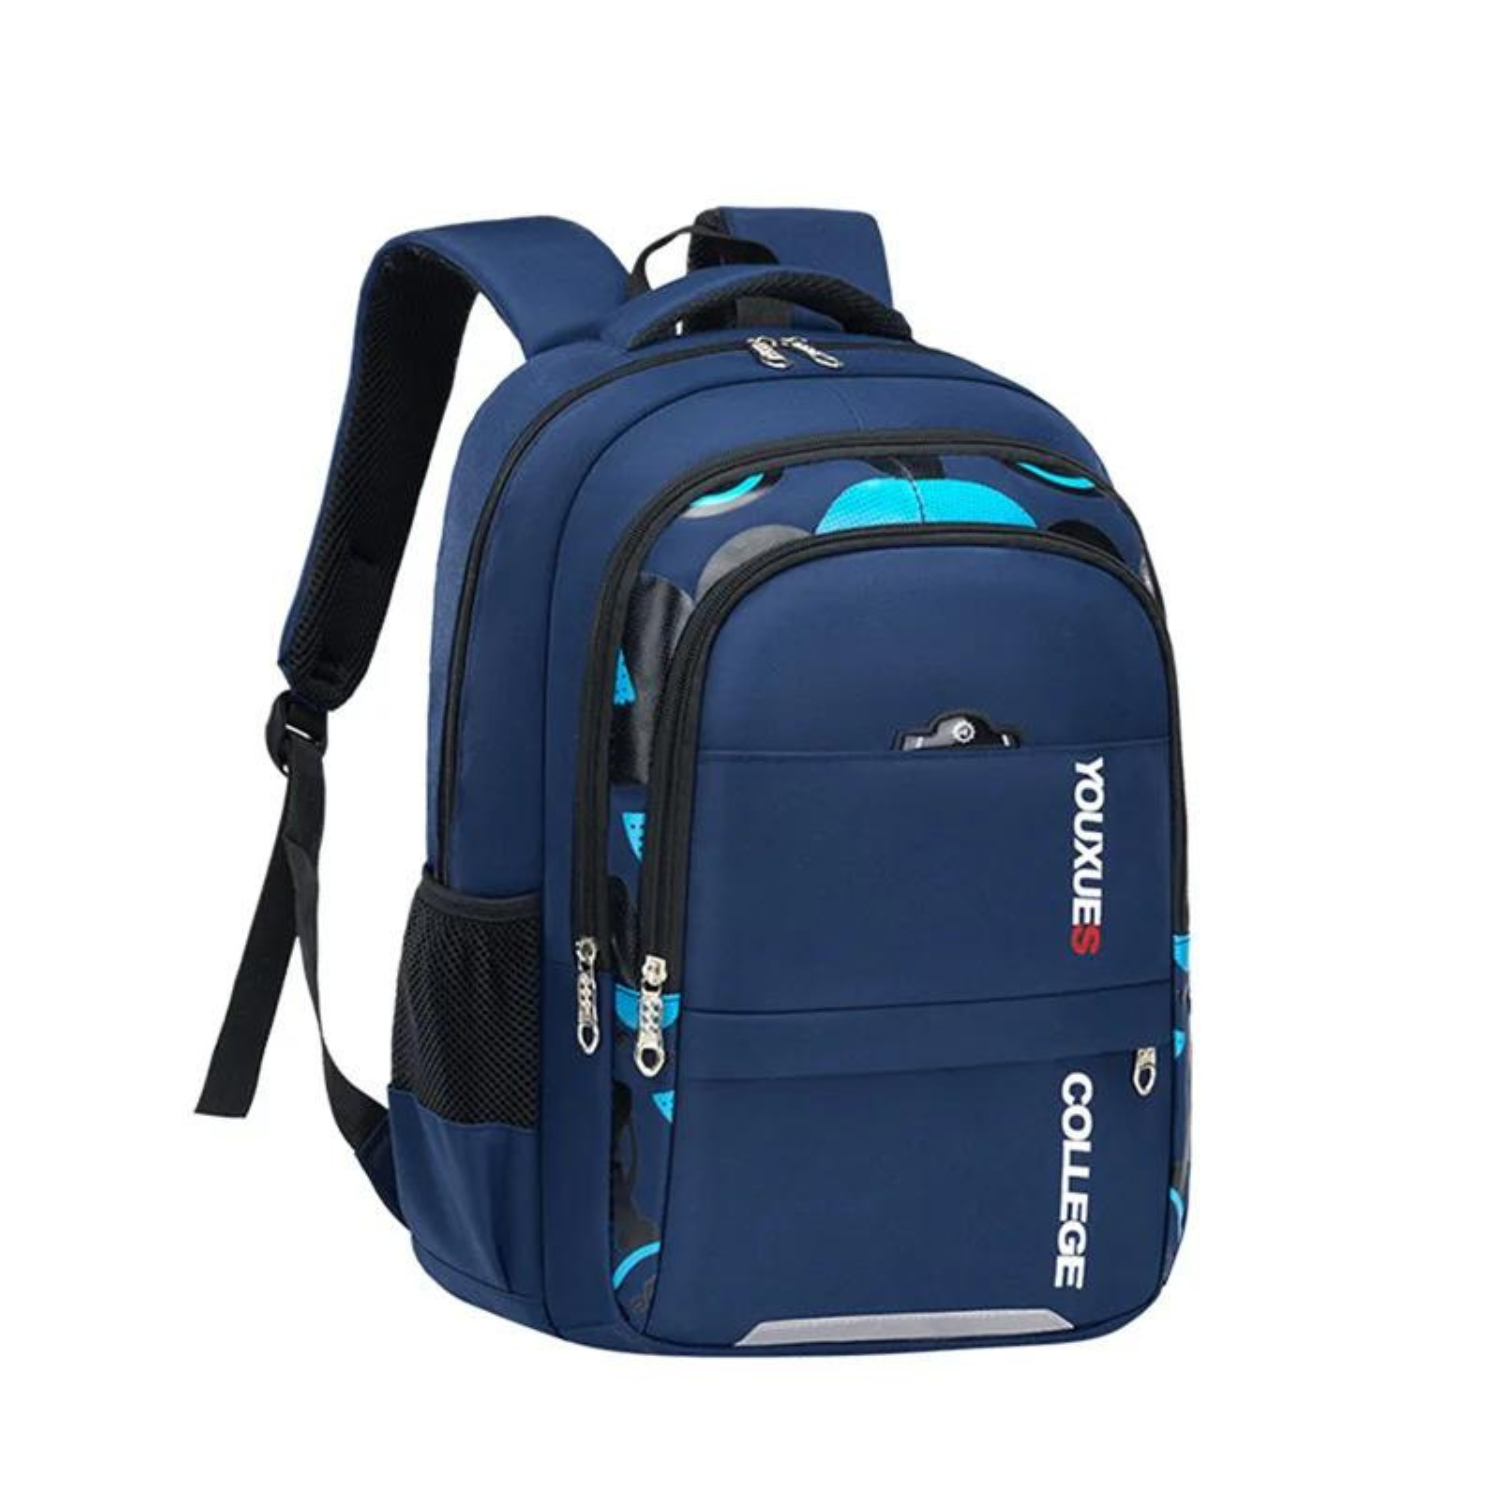 Sleek Waterproof School Backpack for Teens